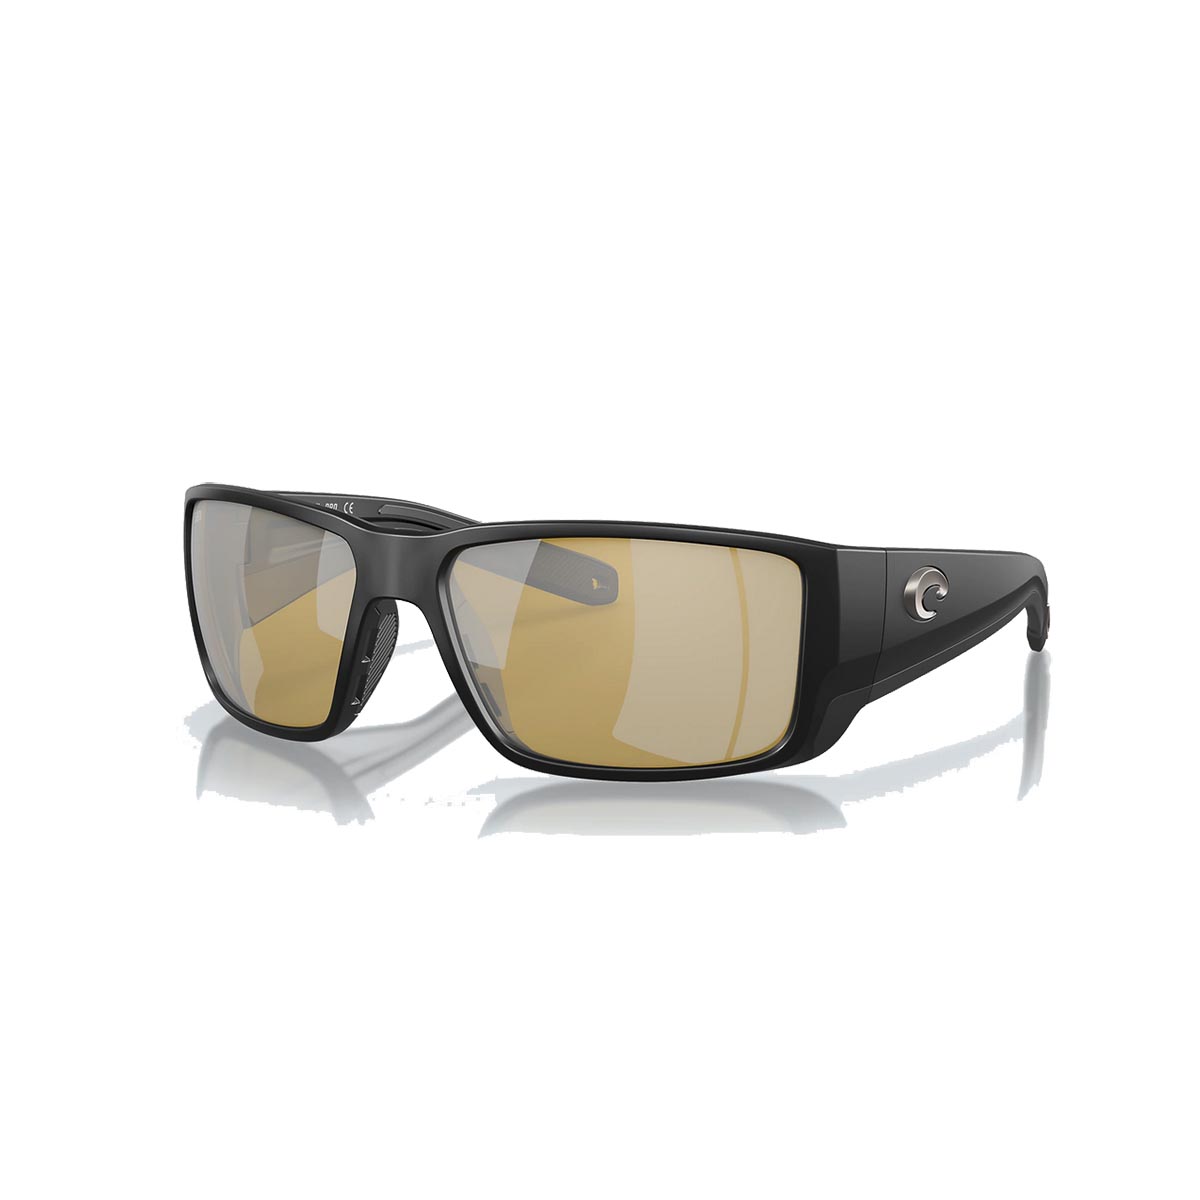 Costa Blackfin PRO Sunglasses Polarized in Matte Black with Sunrise Silver Mirror 580G